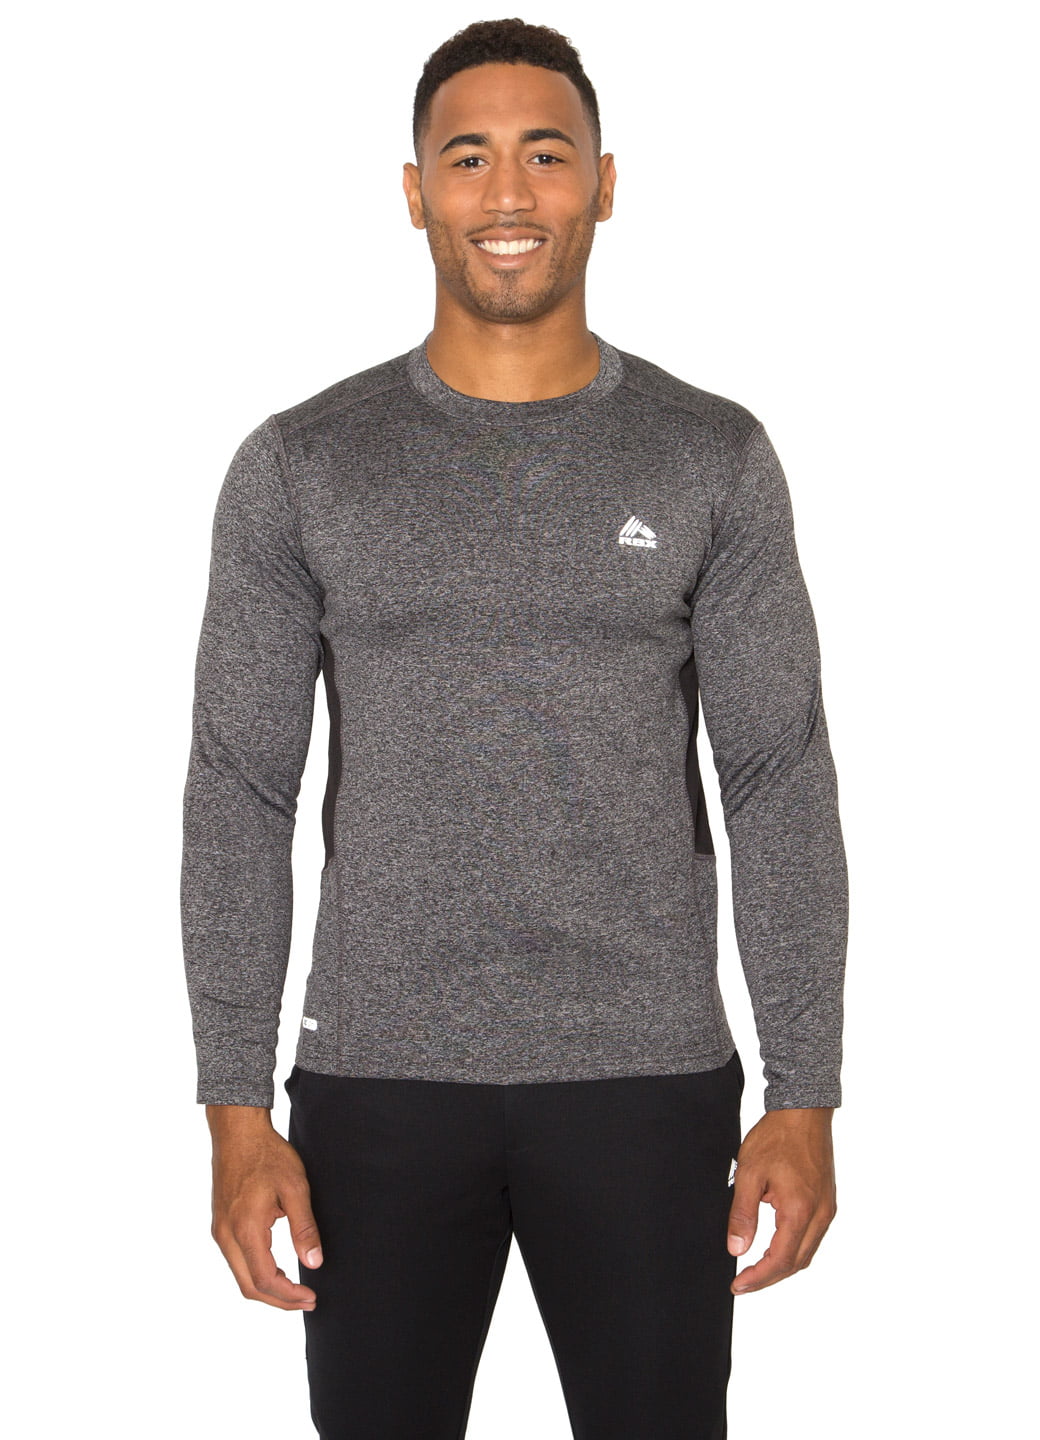 RBX - RBX Active Men's Long Sleeve Insulated Running Shirt - Walmart ...